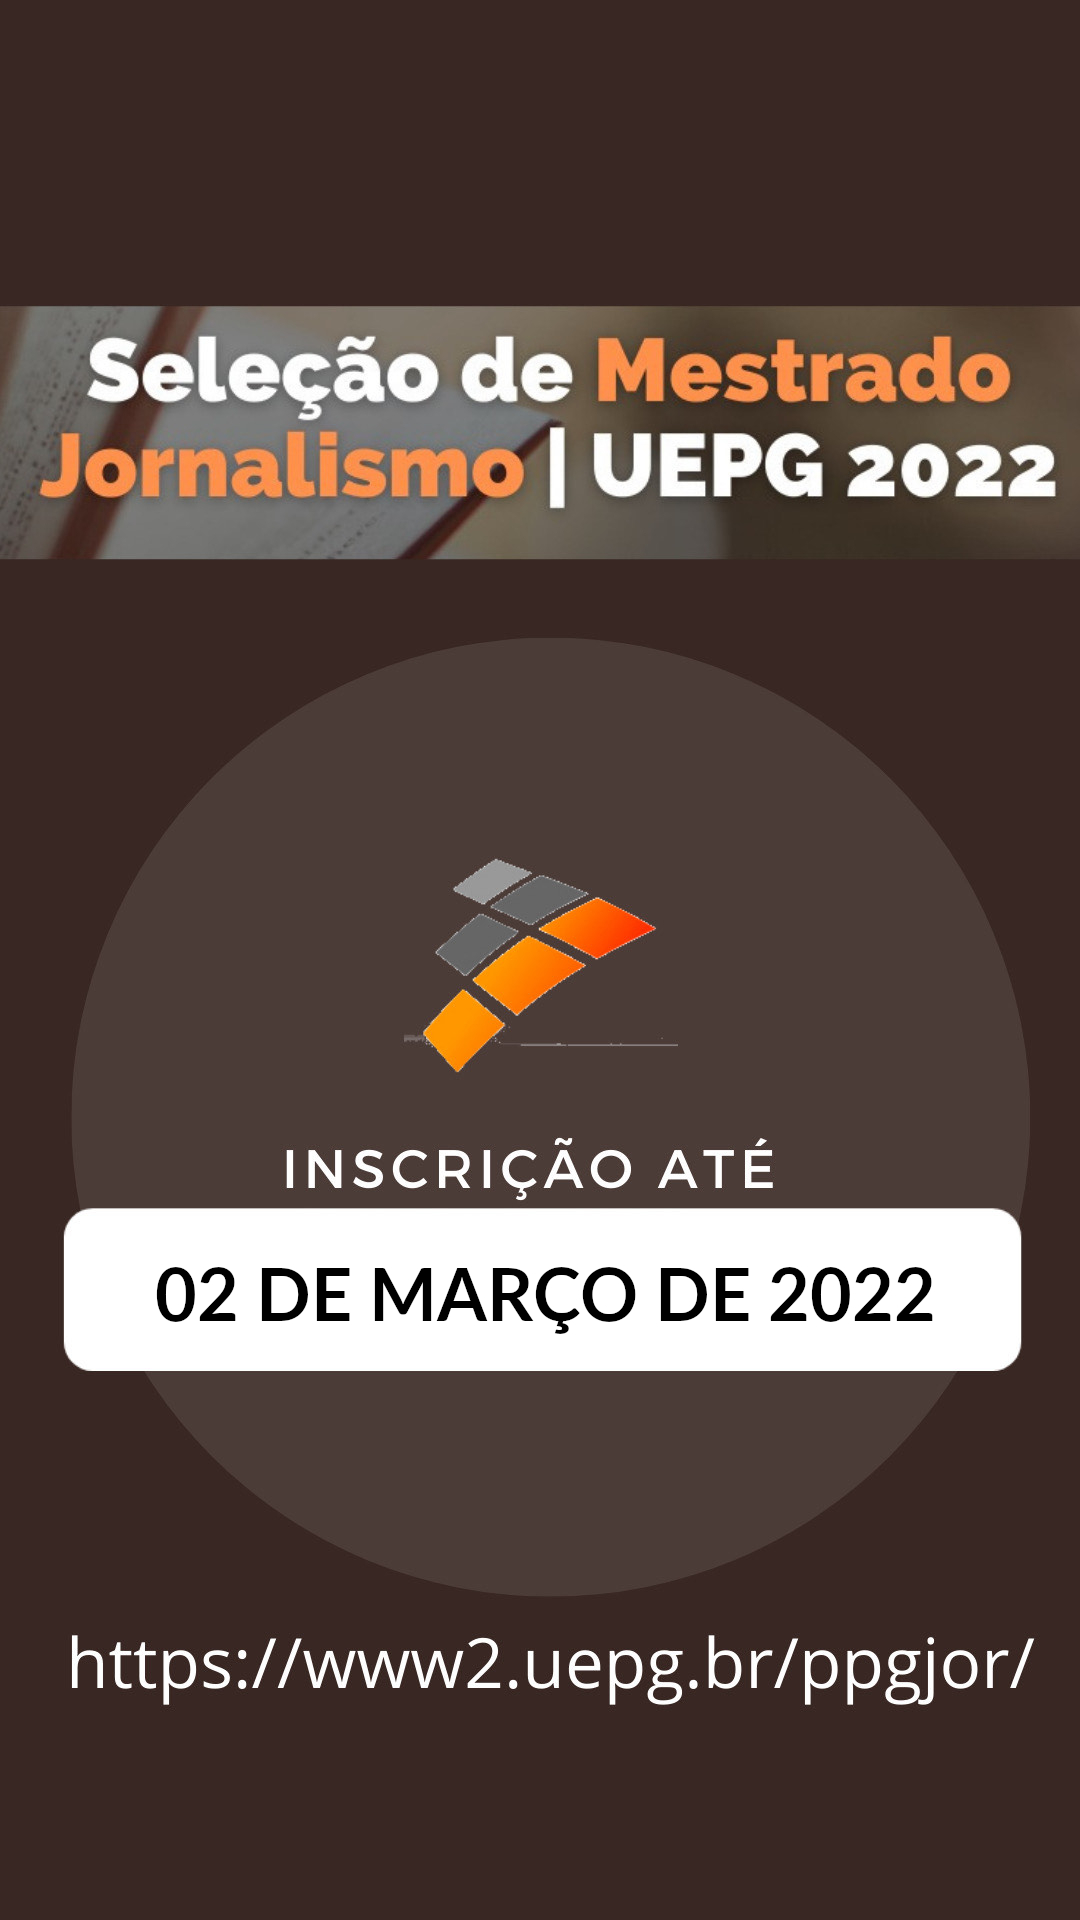 Mestrado em Jornalismo da UEPG tem inscrições abertas até 02/03